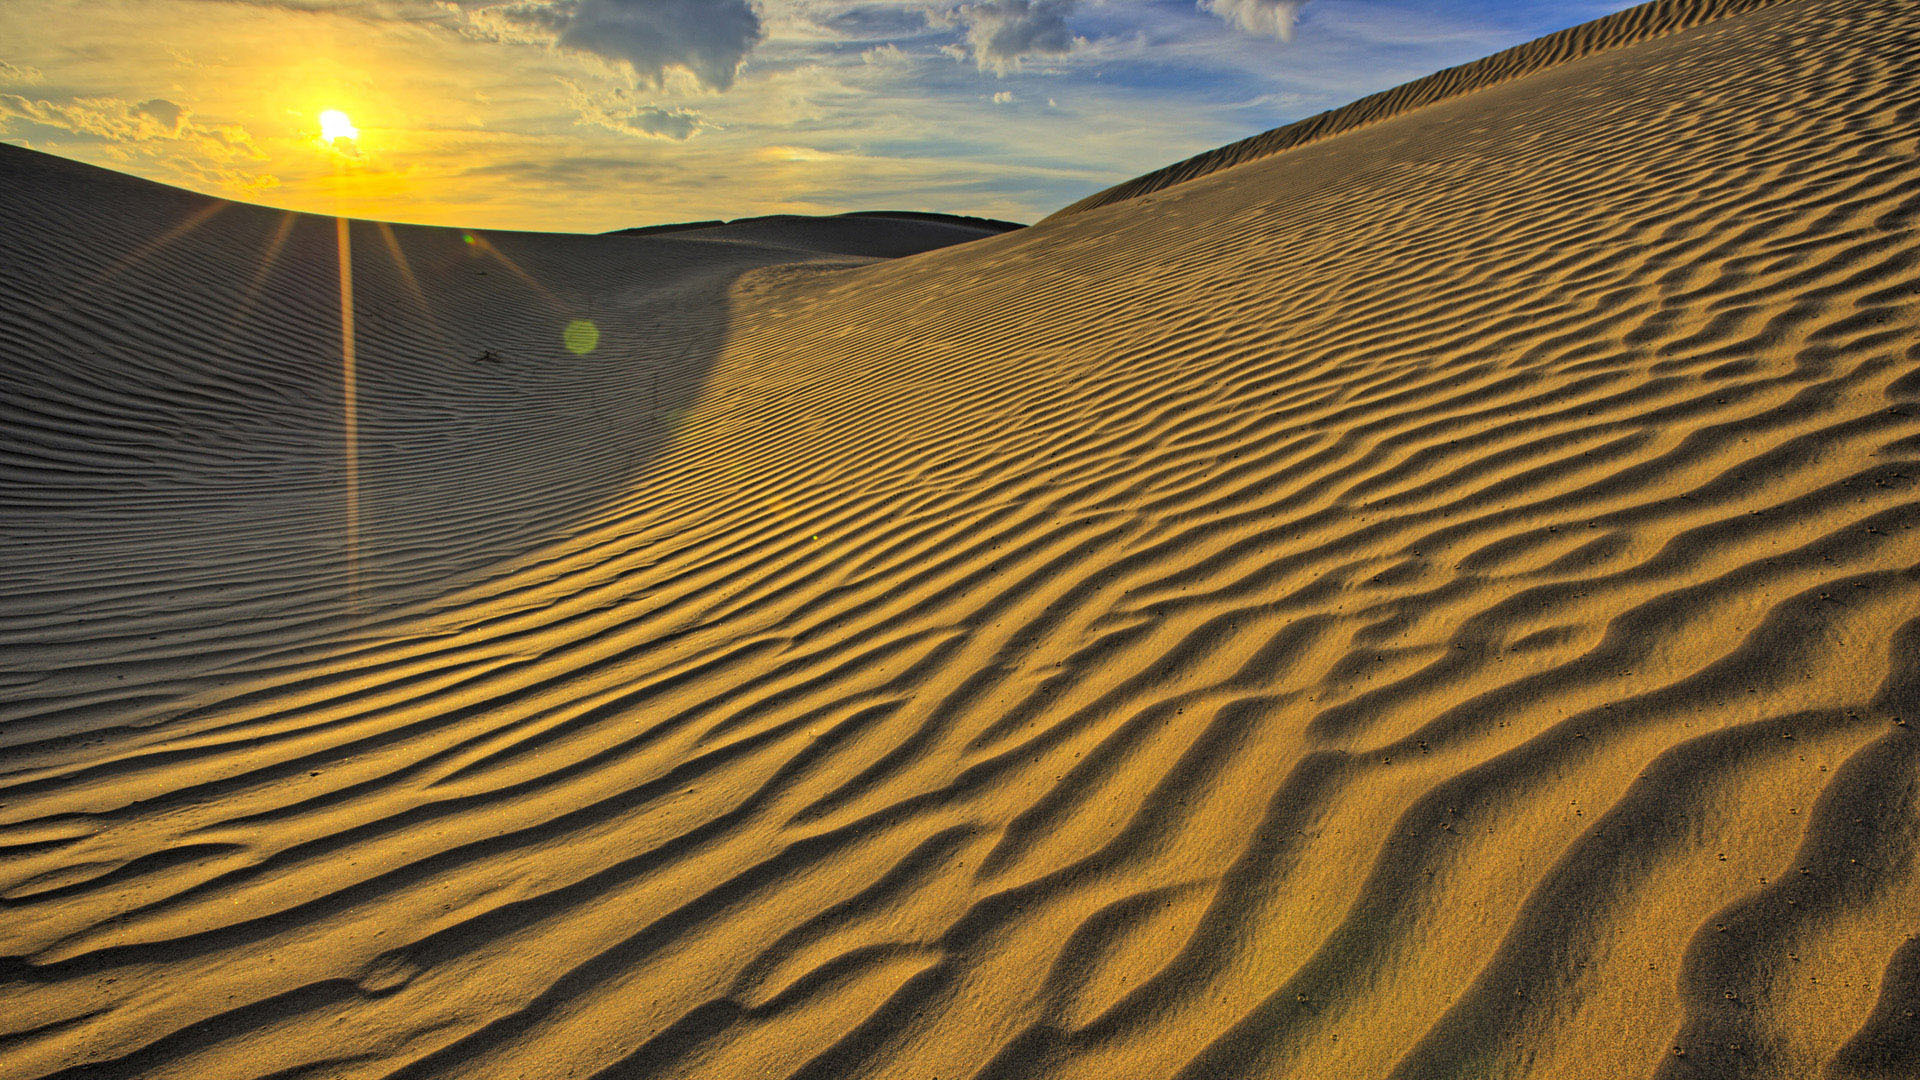 Download mobile wallpaper Sand, Desert, Earth for free.